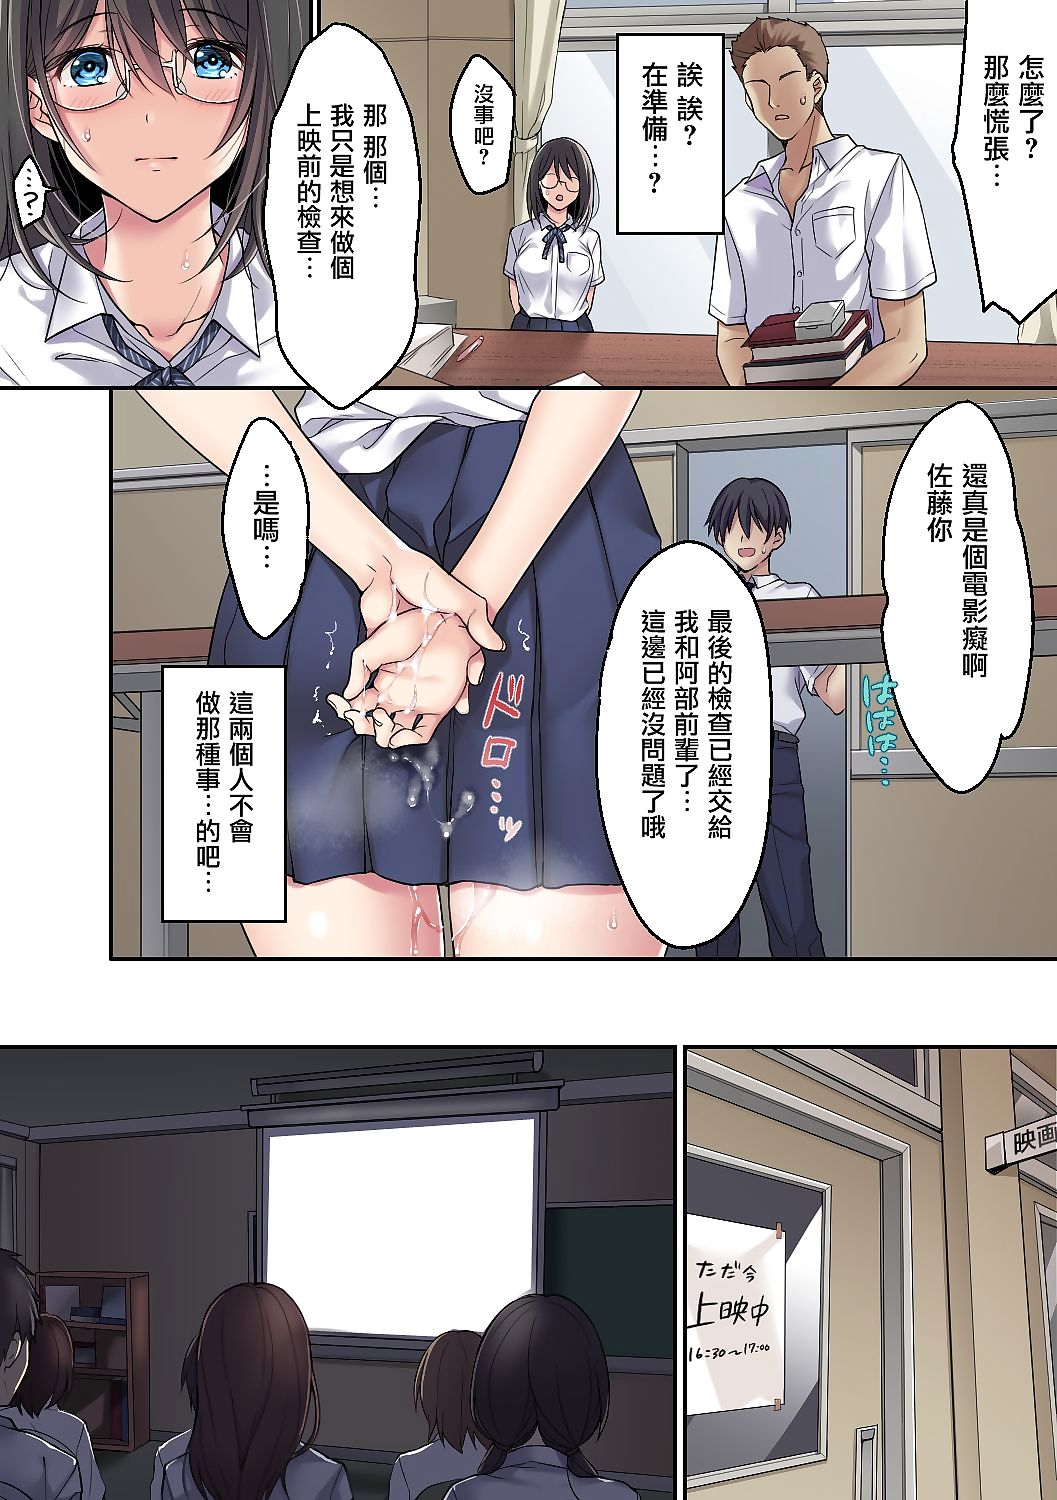 kanojo ไม่ page 1